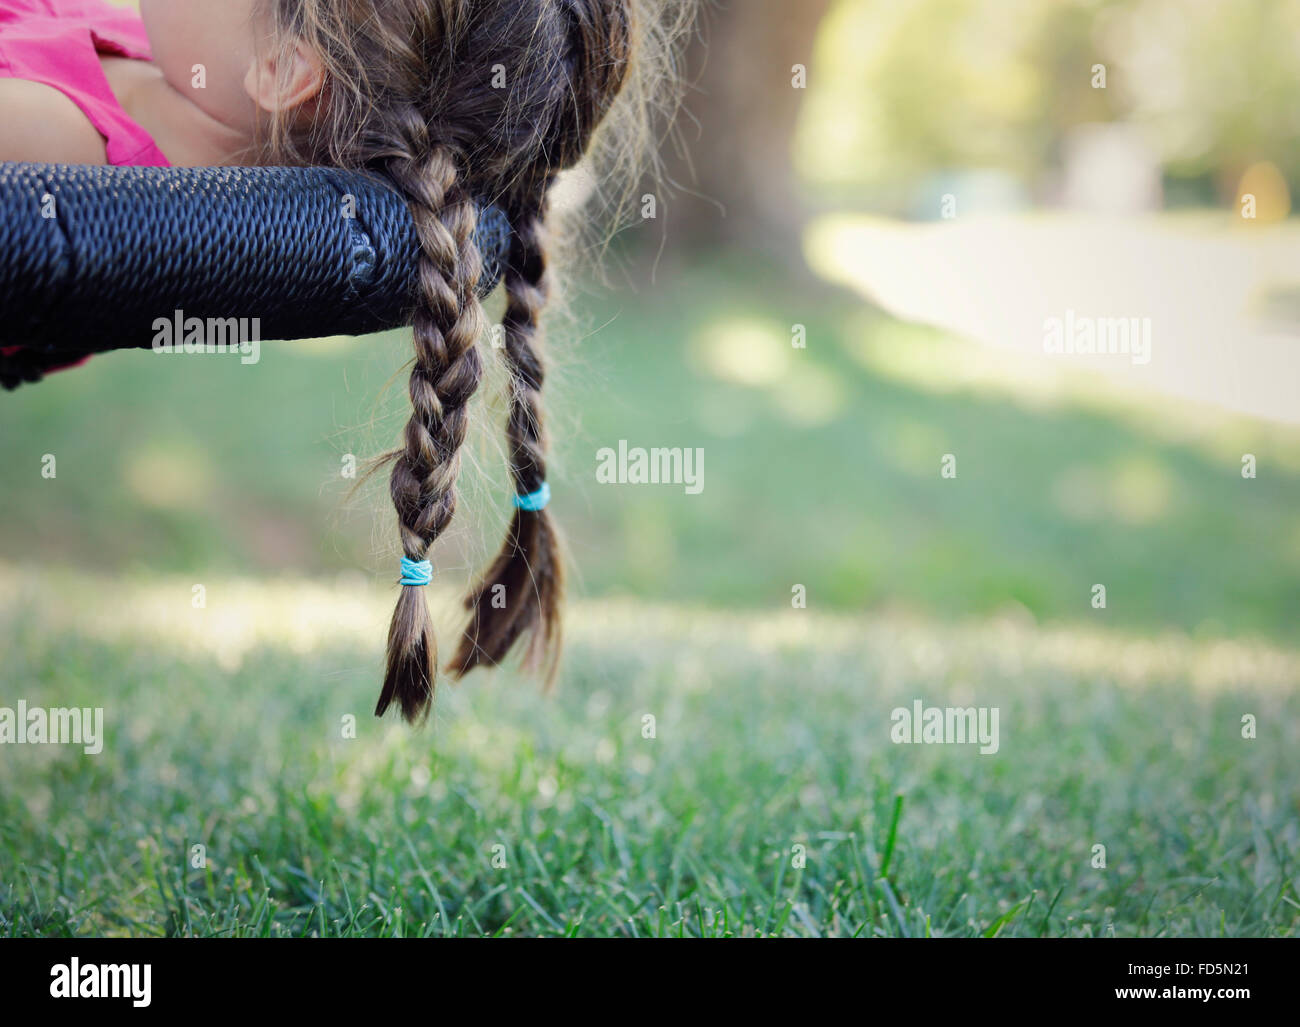 Bild von eines jungen Mädchens Zöpfe hängen über den Rand ihrer Schaukel. Stockfoto